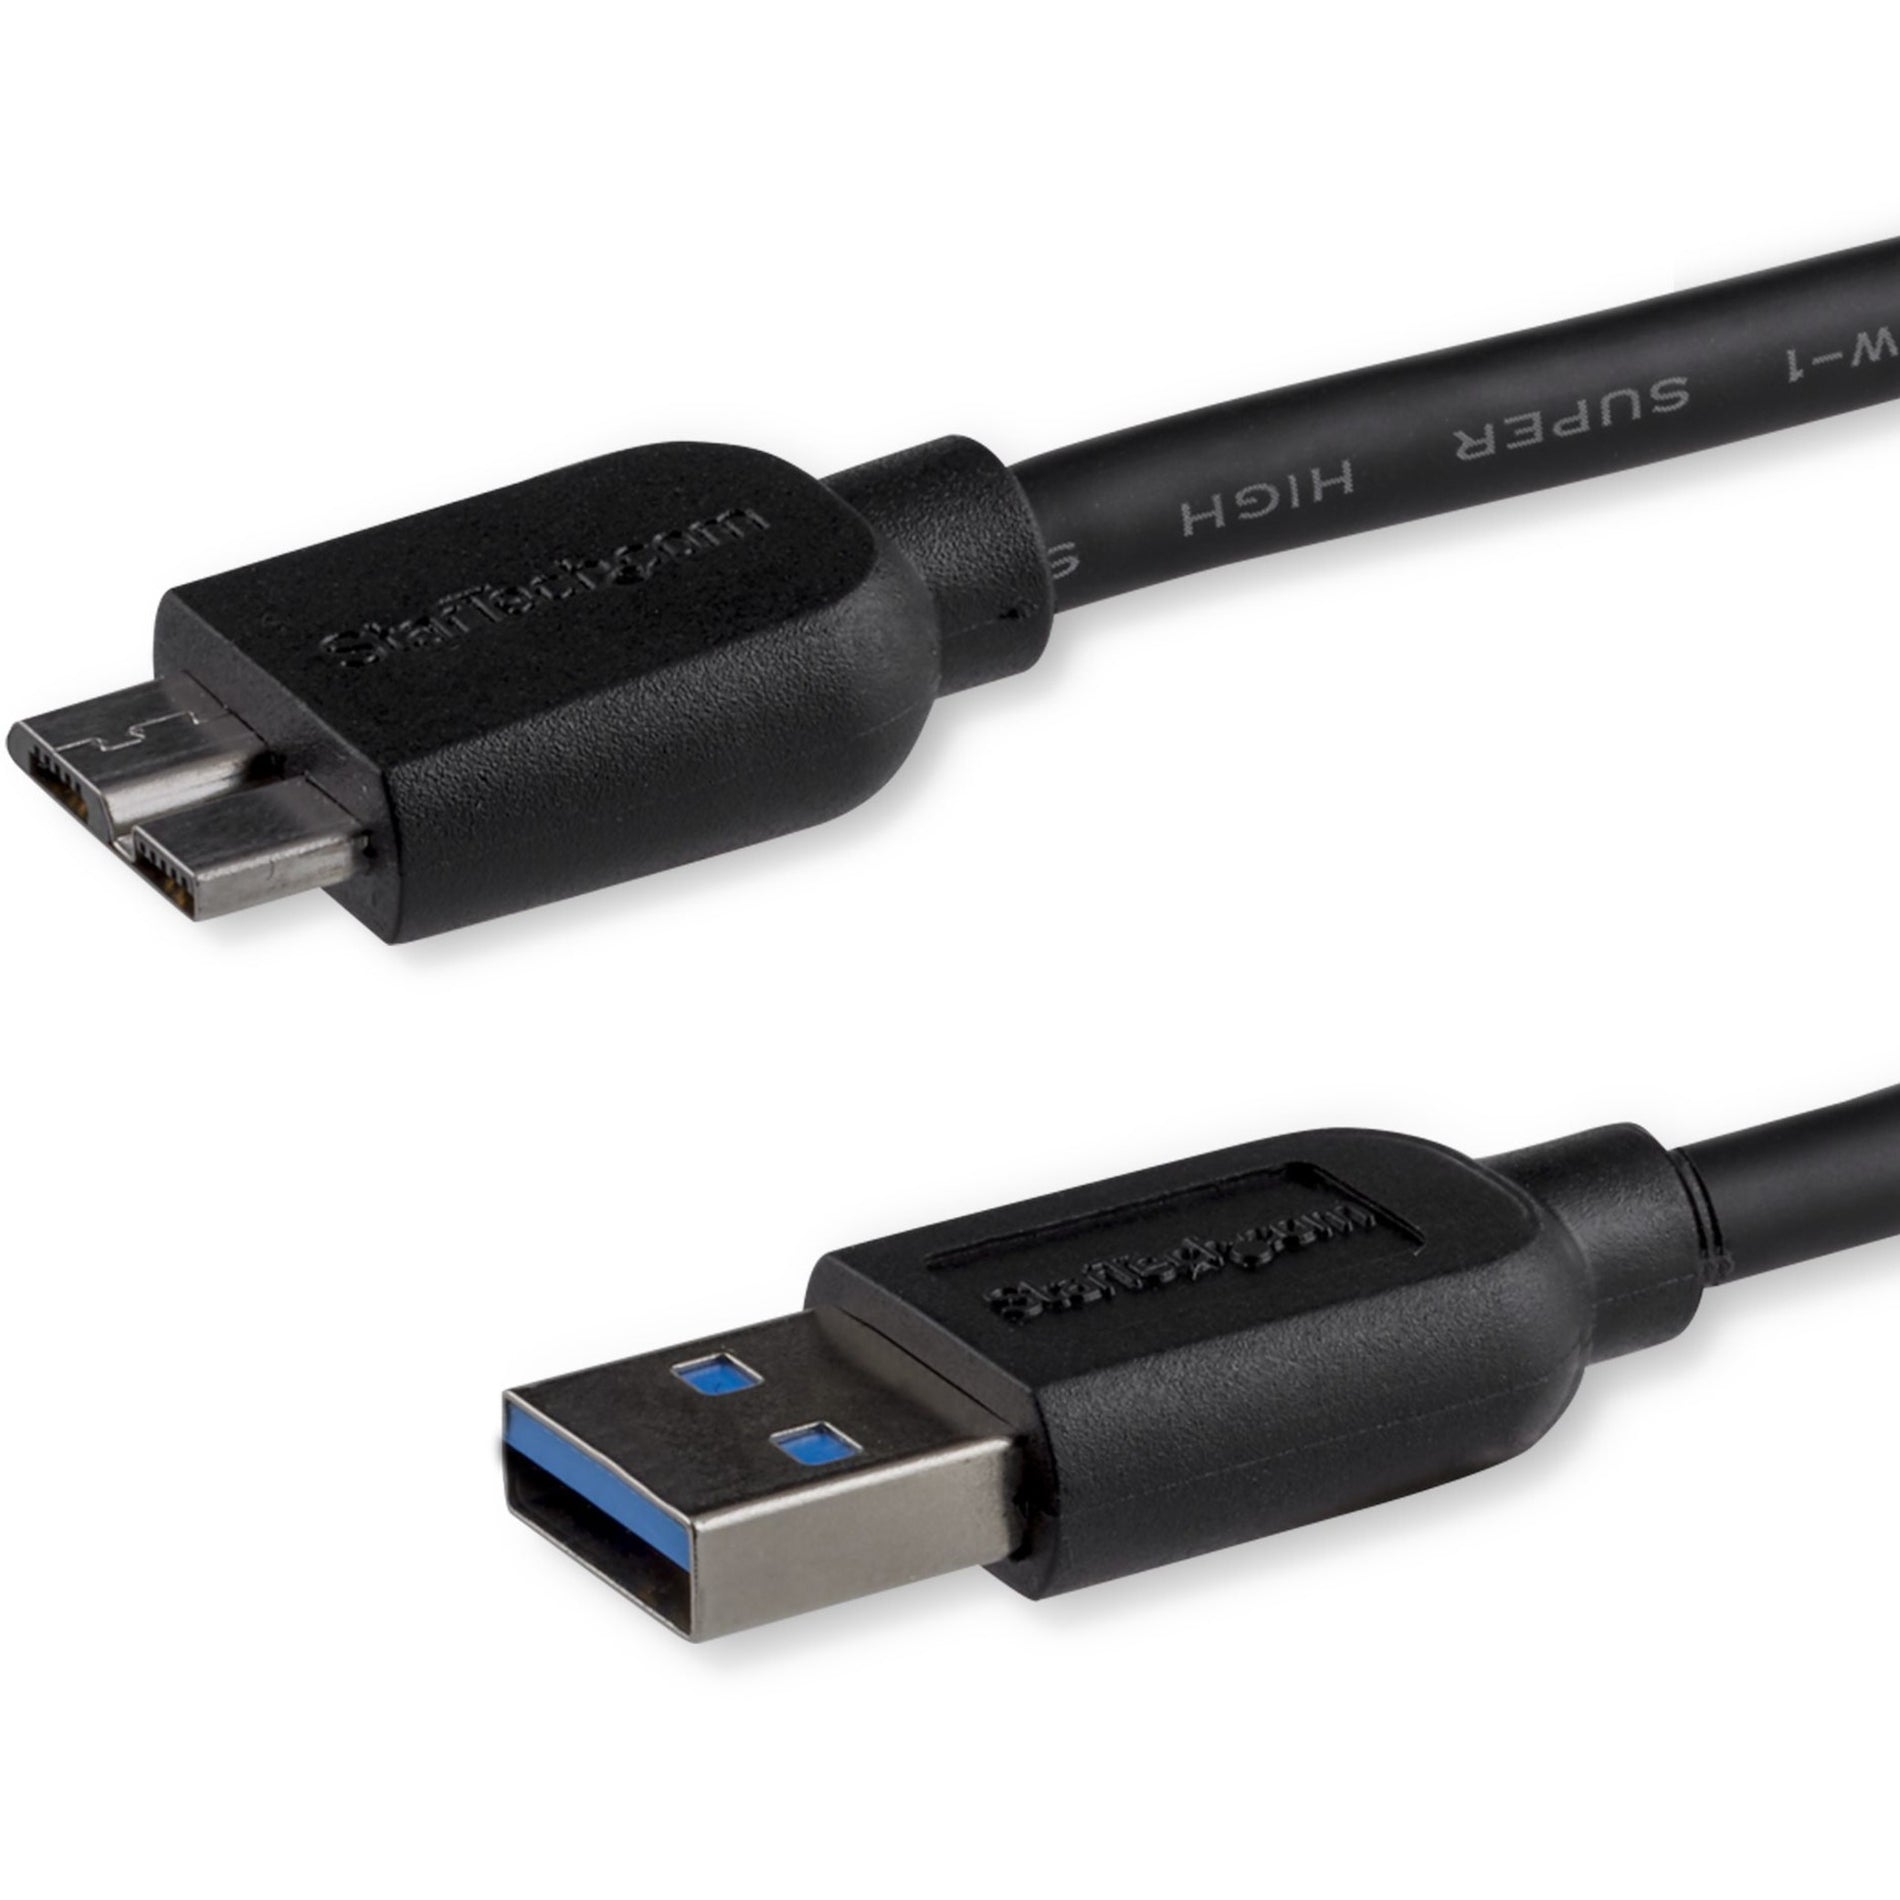 Marca: StarTech.com Cable USB 3.0 A a Micro B Superspeed delgado de 0.5m (20 pulgadas) - M/M Transferencia de Datos Rápida y Carga